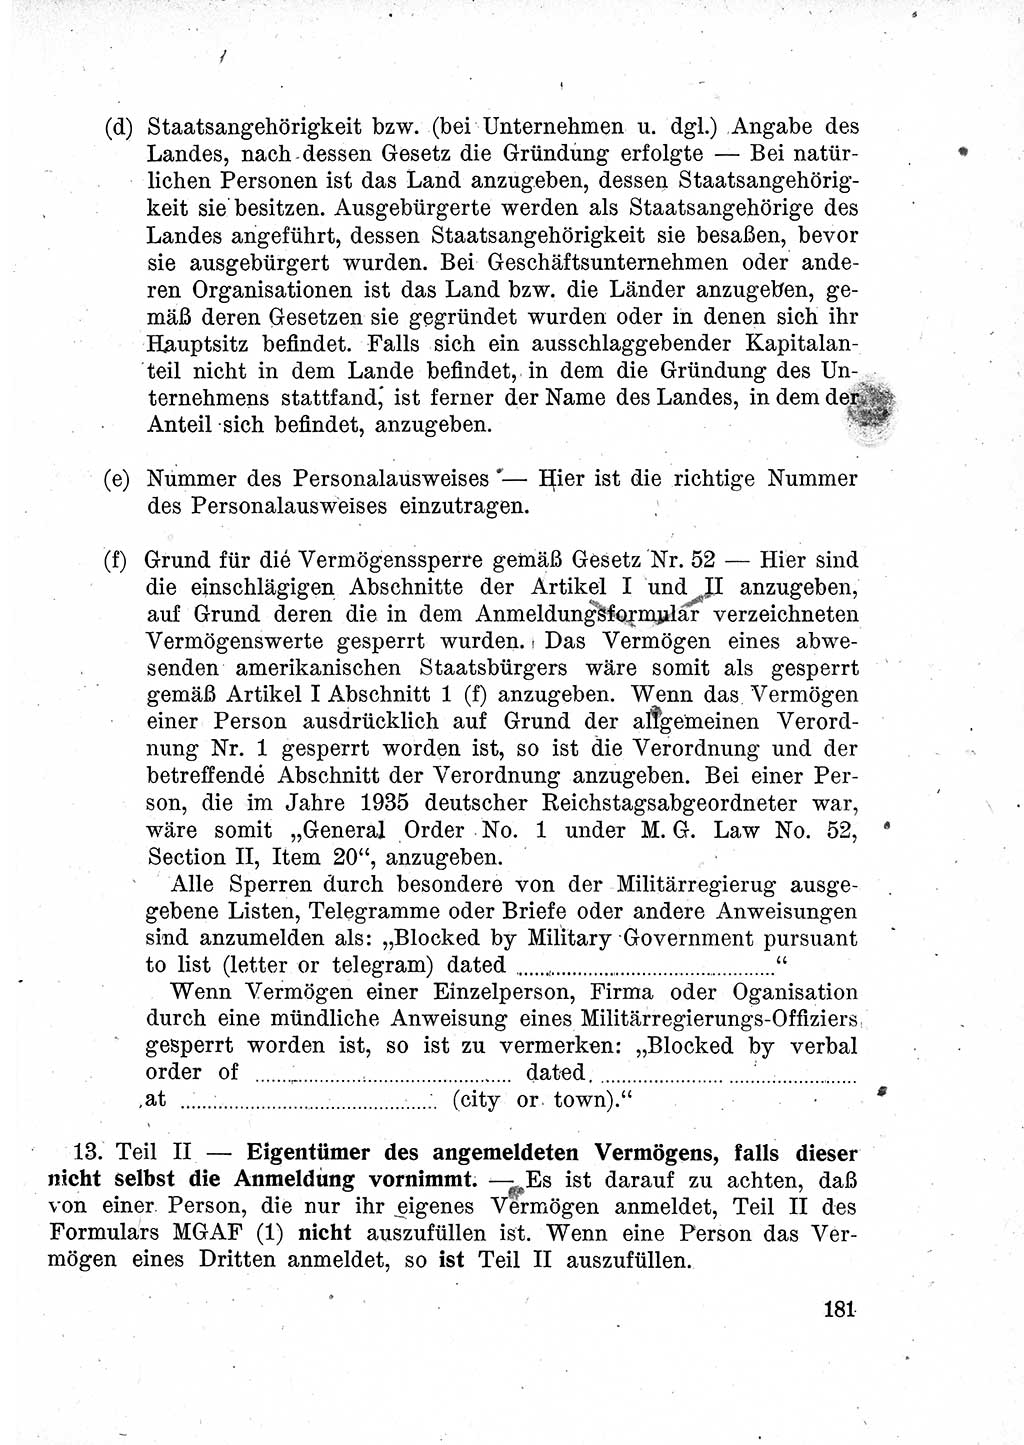 Das Recht der Besatzungsmacht (Deutschland), Proklamationen, Deklerationen, Verordnungen, Gesetze und Bekanntmachungen 1947, Seite 181 (R. Bes. Dtl. 1947, S. 181)